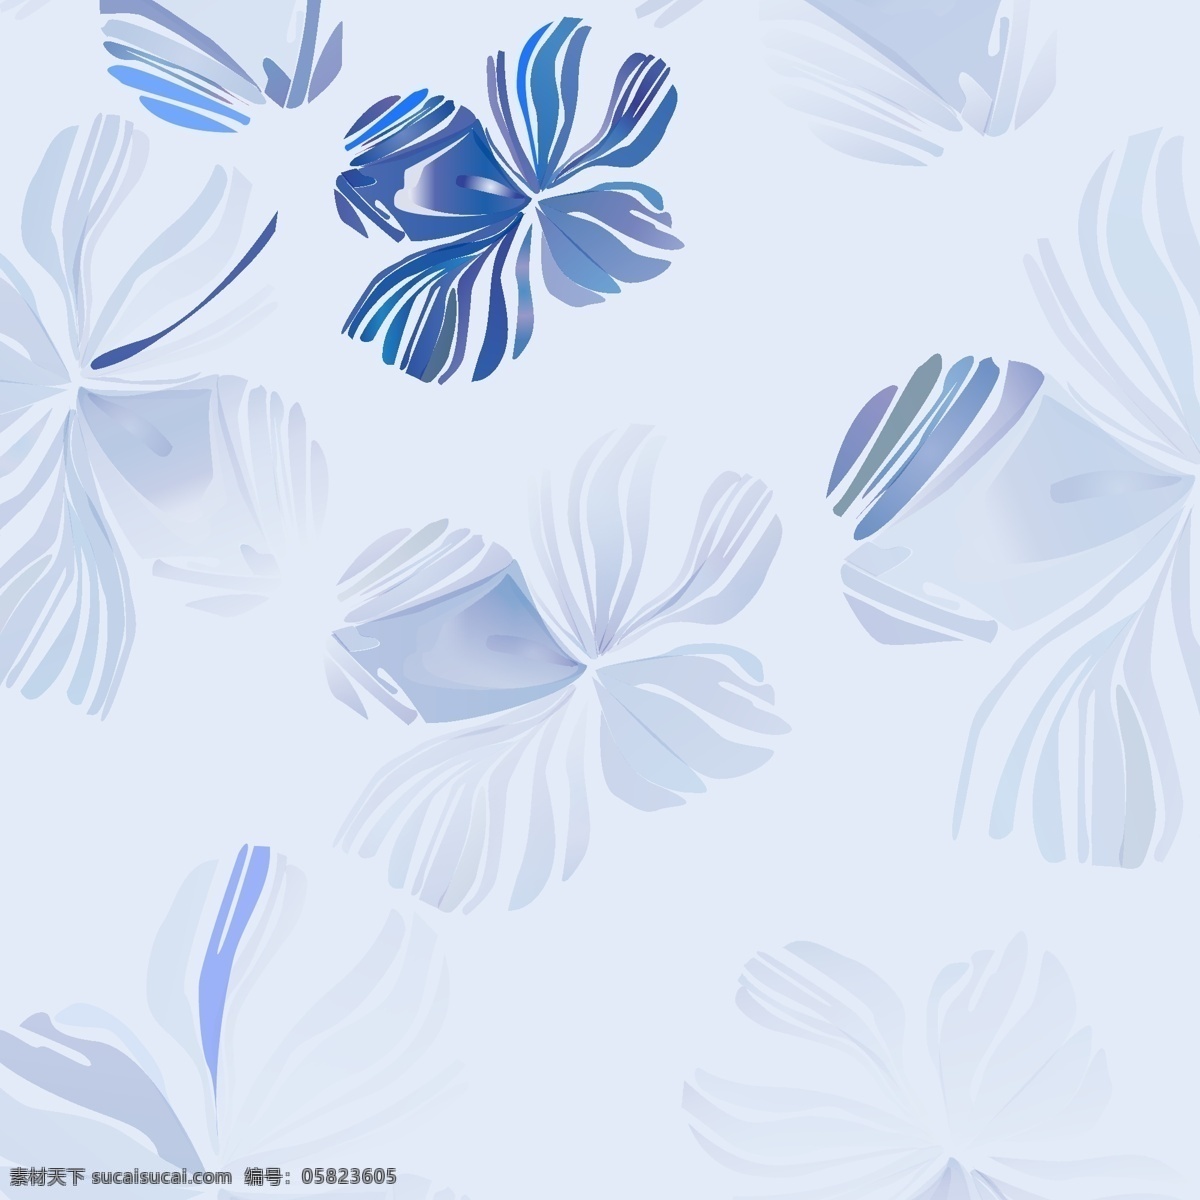 清新水墨花朵 清新 水墨花朵 植物 花朵 艺术 风格 休闲风 包装设计 海报纹理 底纹 家纺 矢量素材 底纹边框 背景底纹